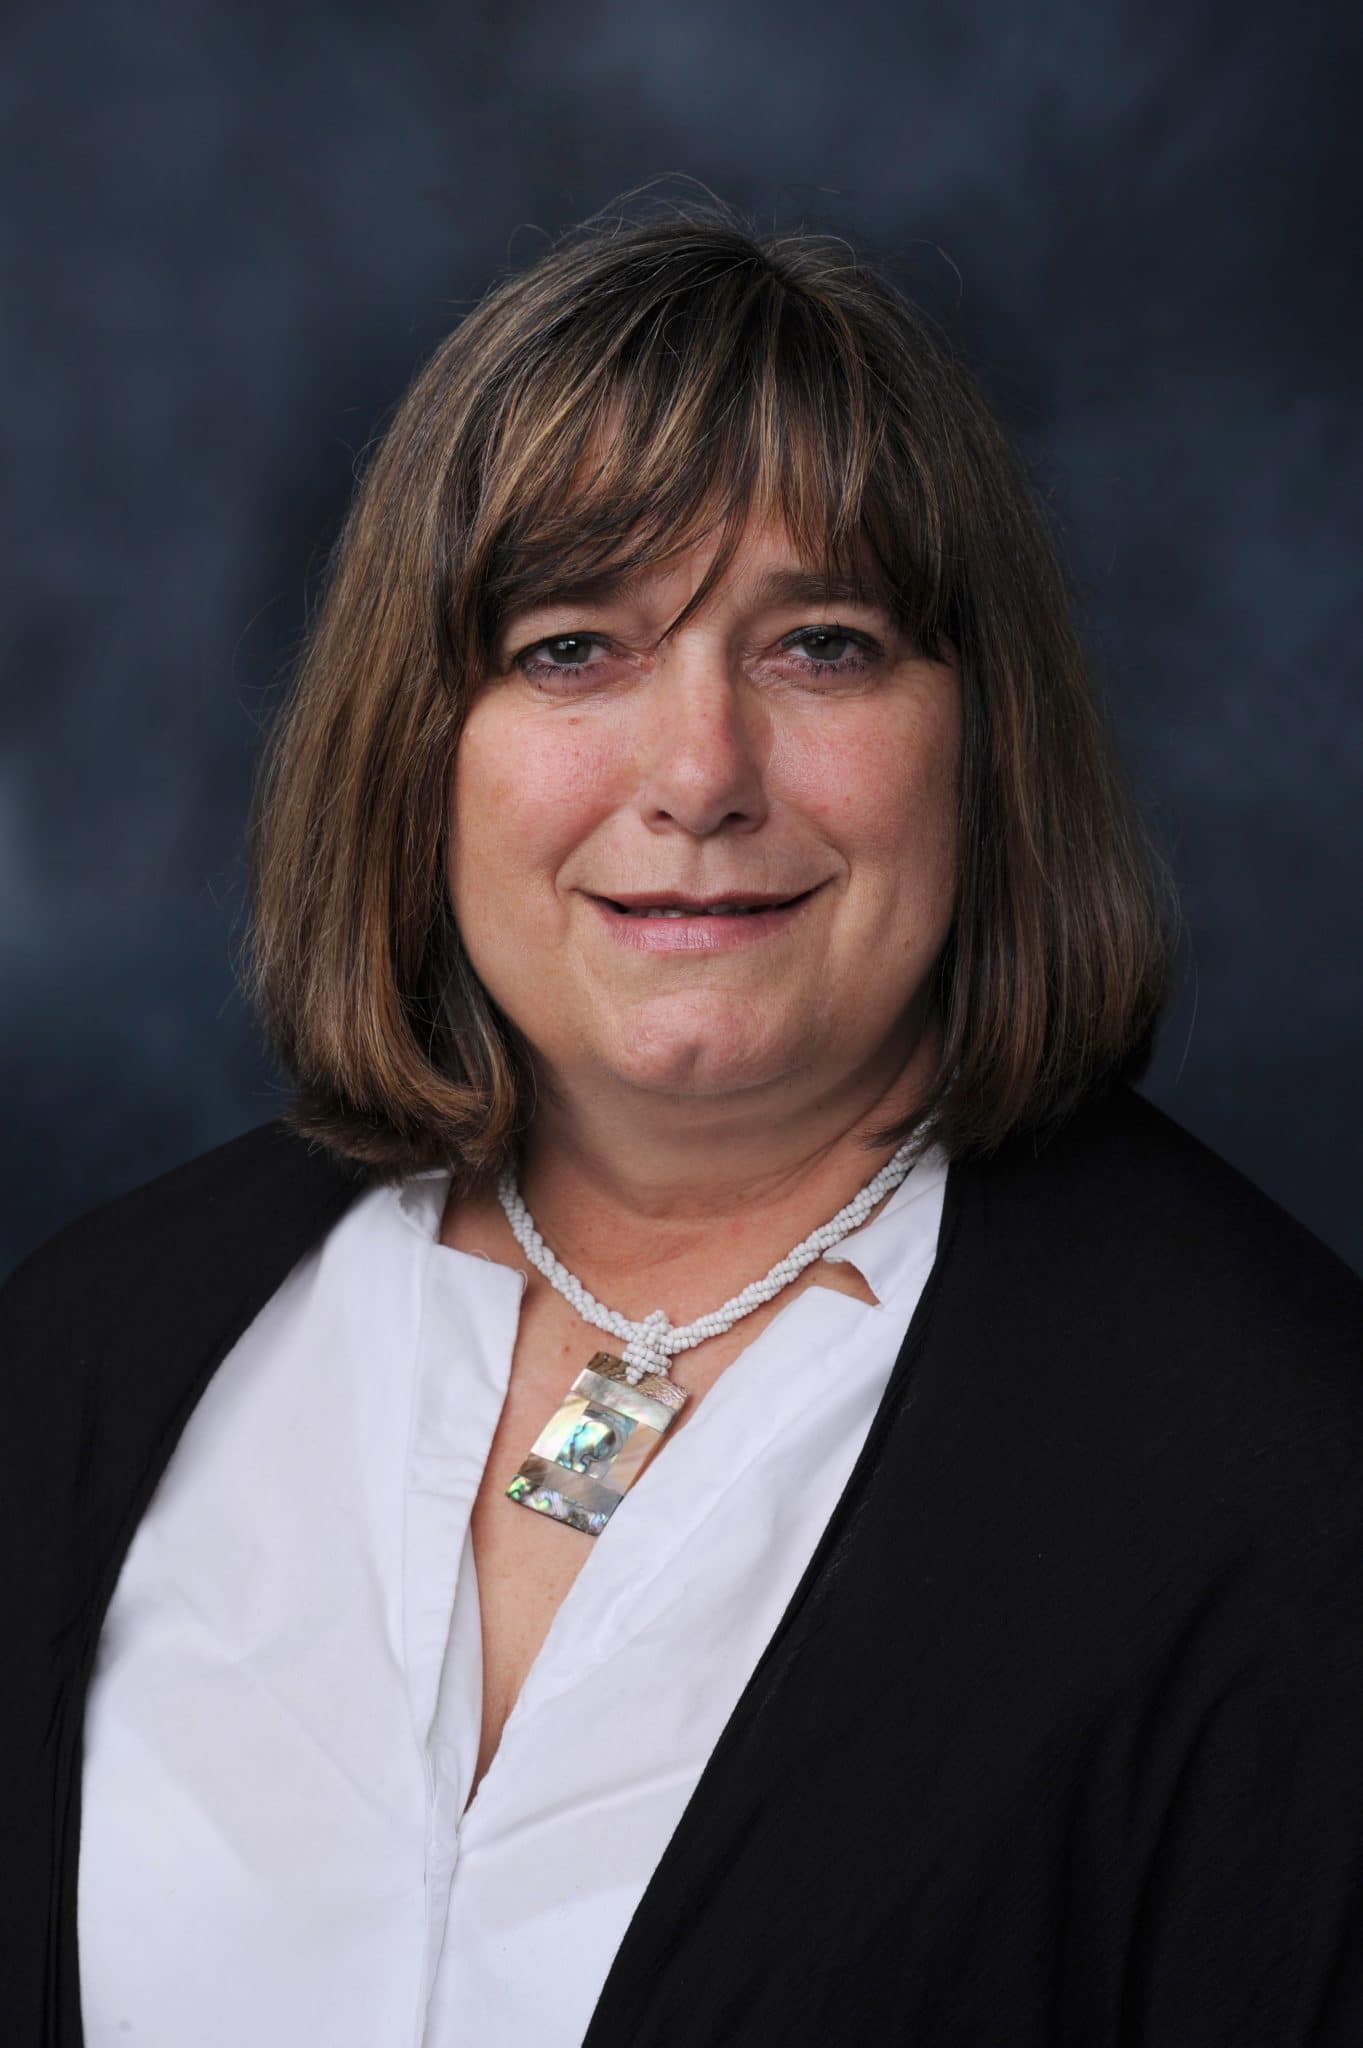  Nancy L. Kuntz, MD, FAAN